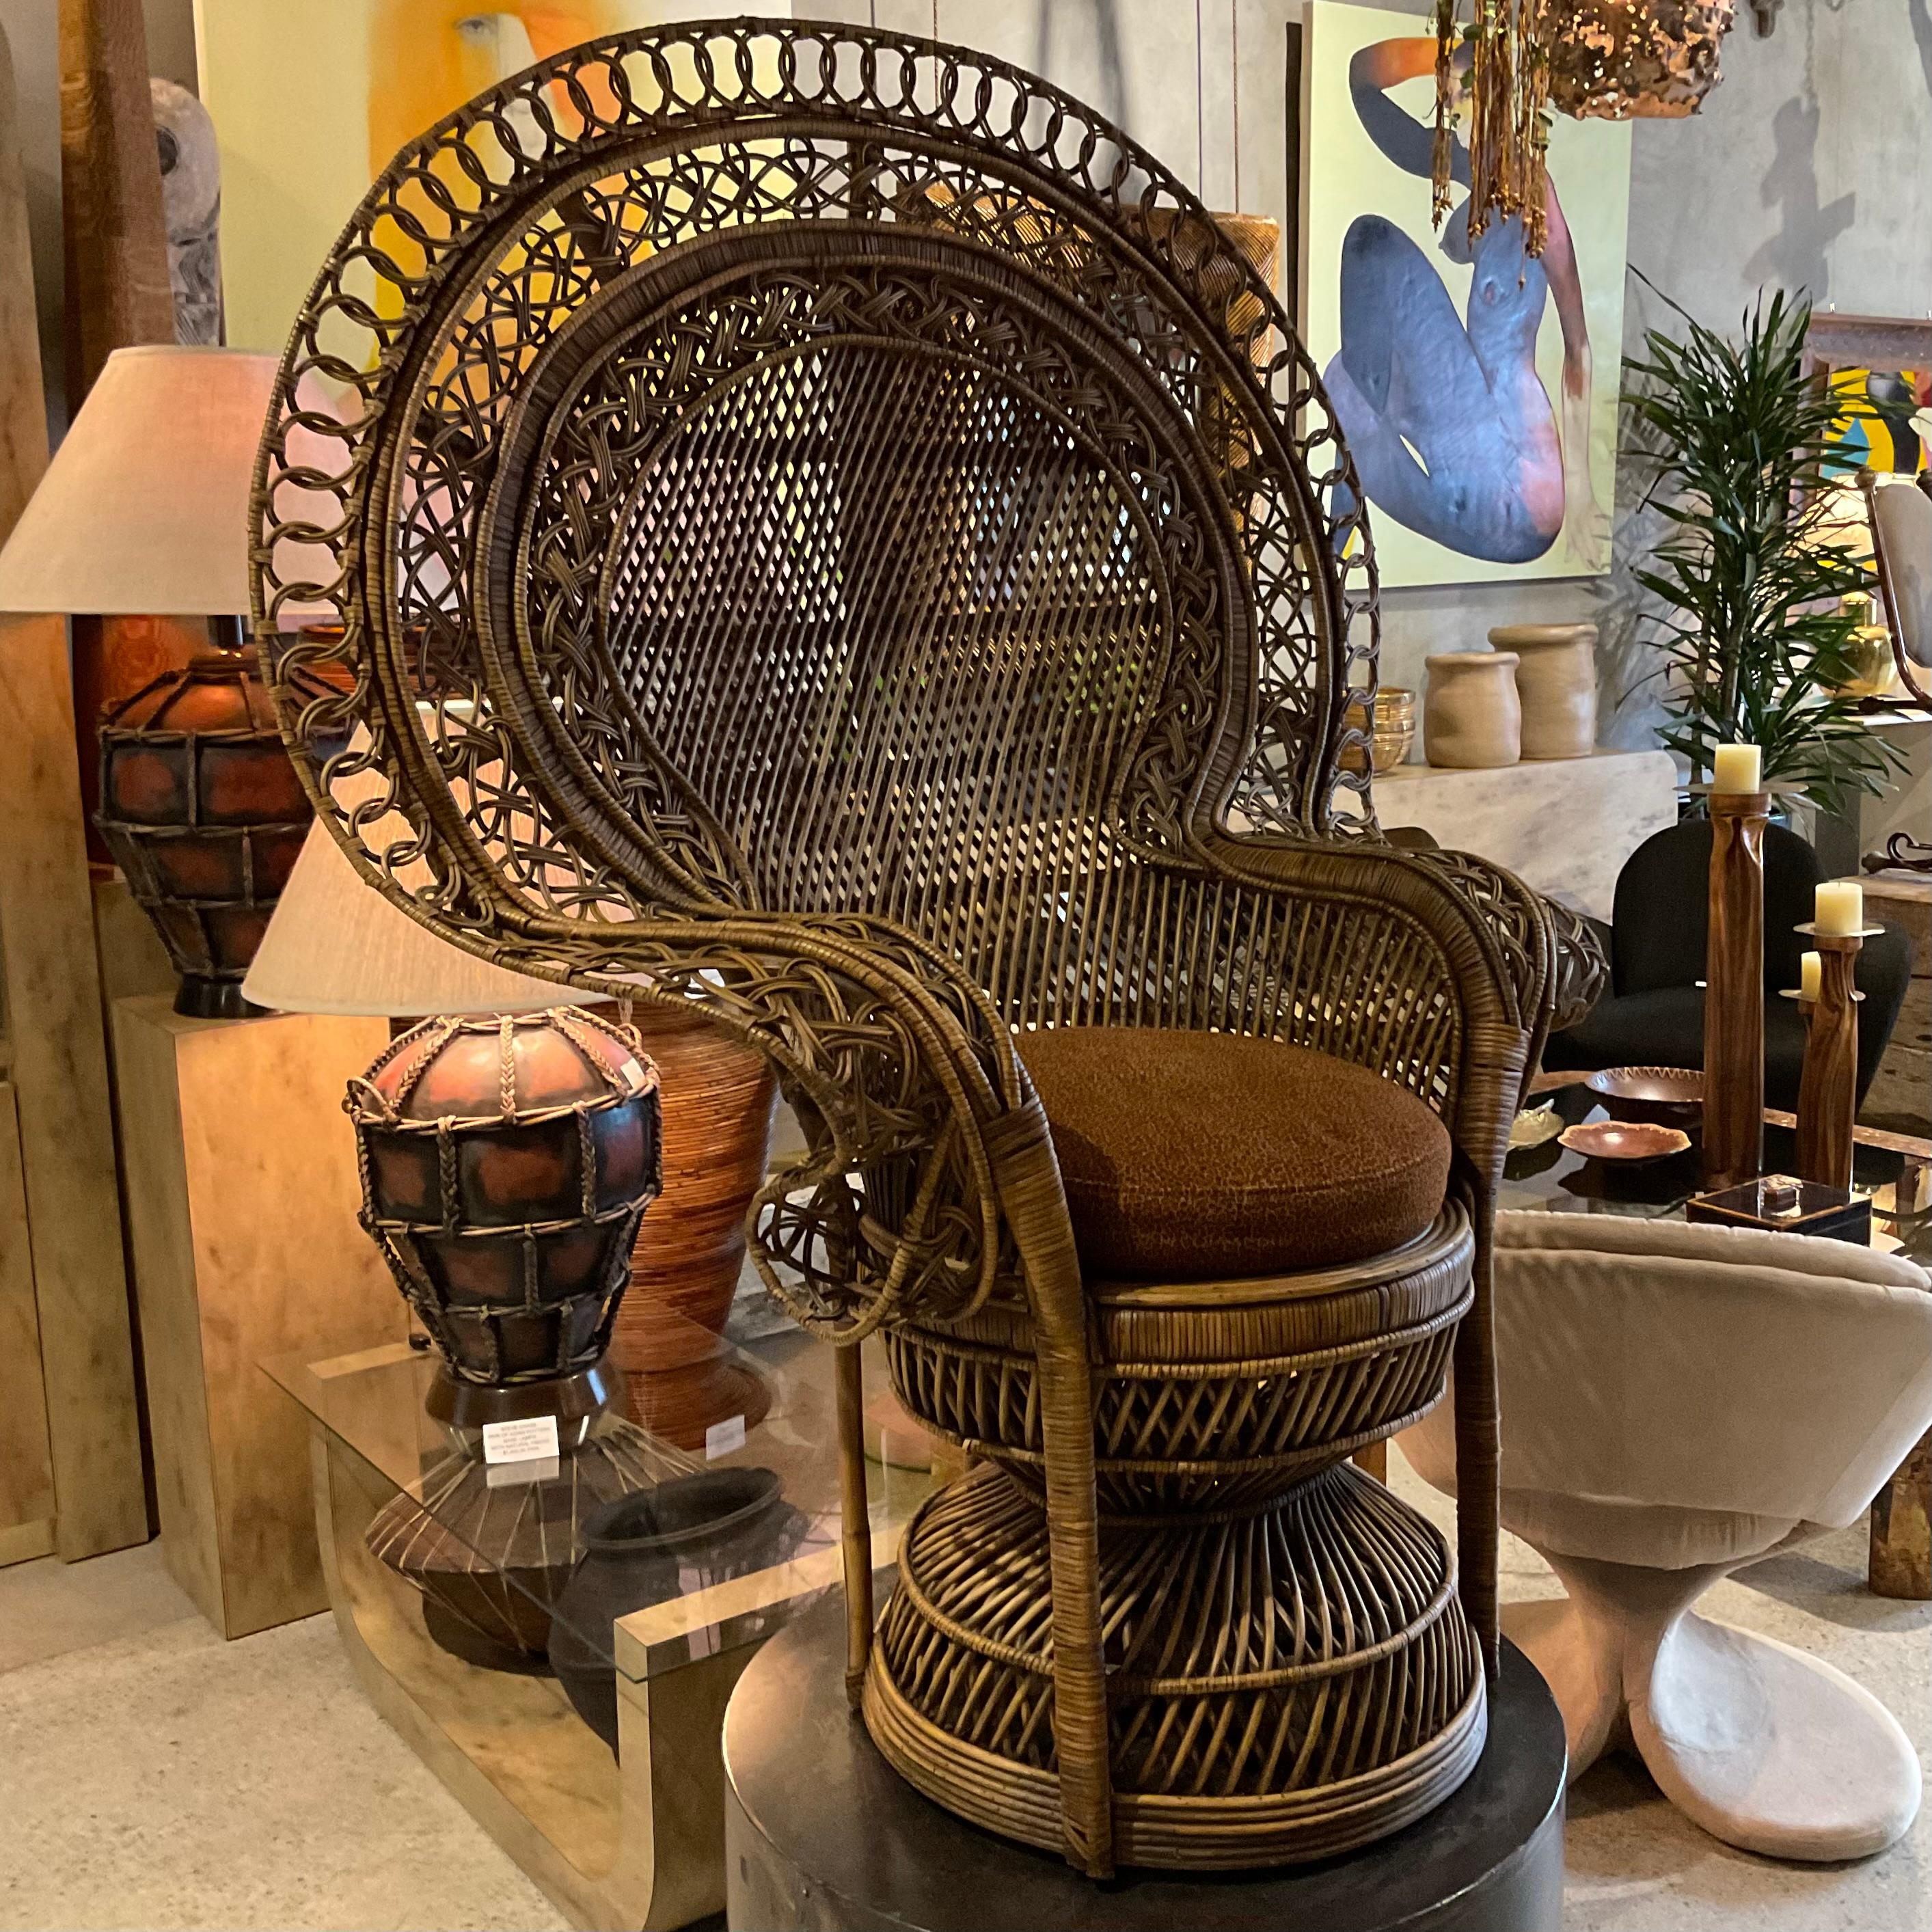 Jute “Peacock” 1970's Vintage Chair